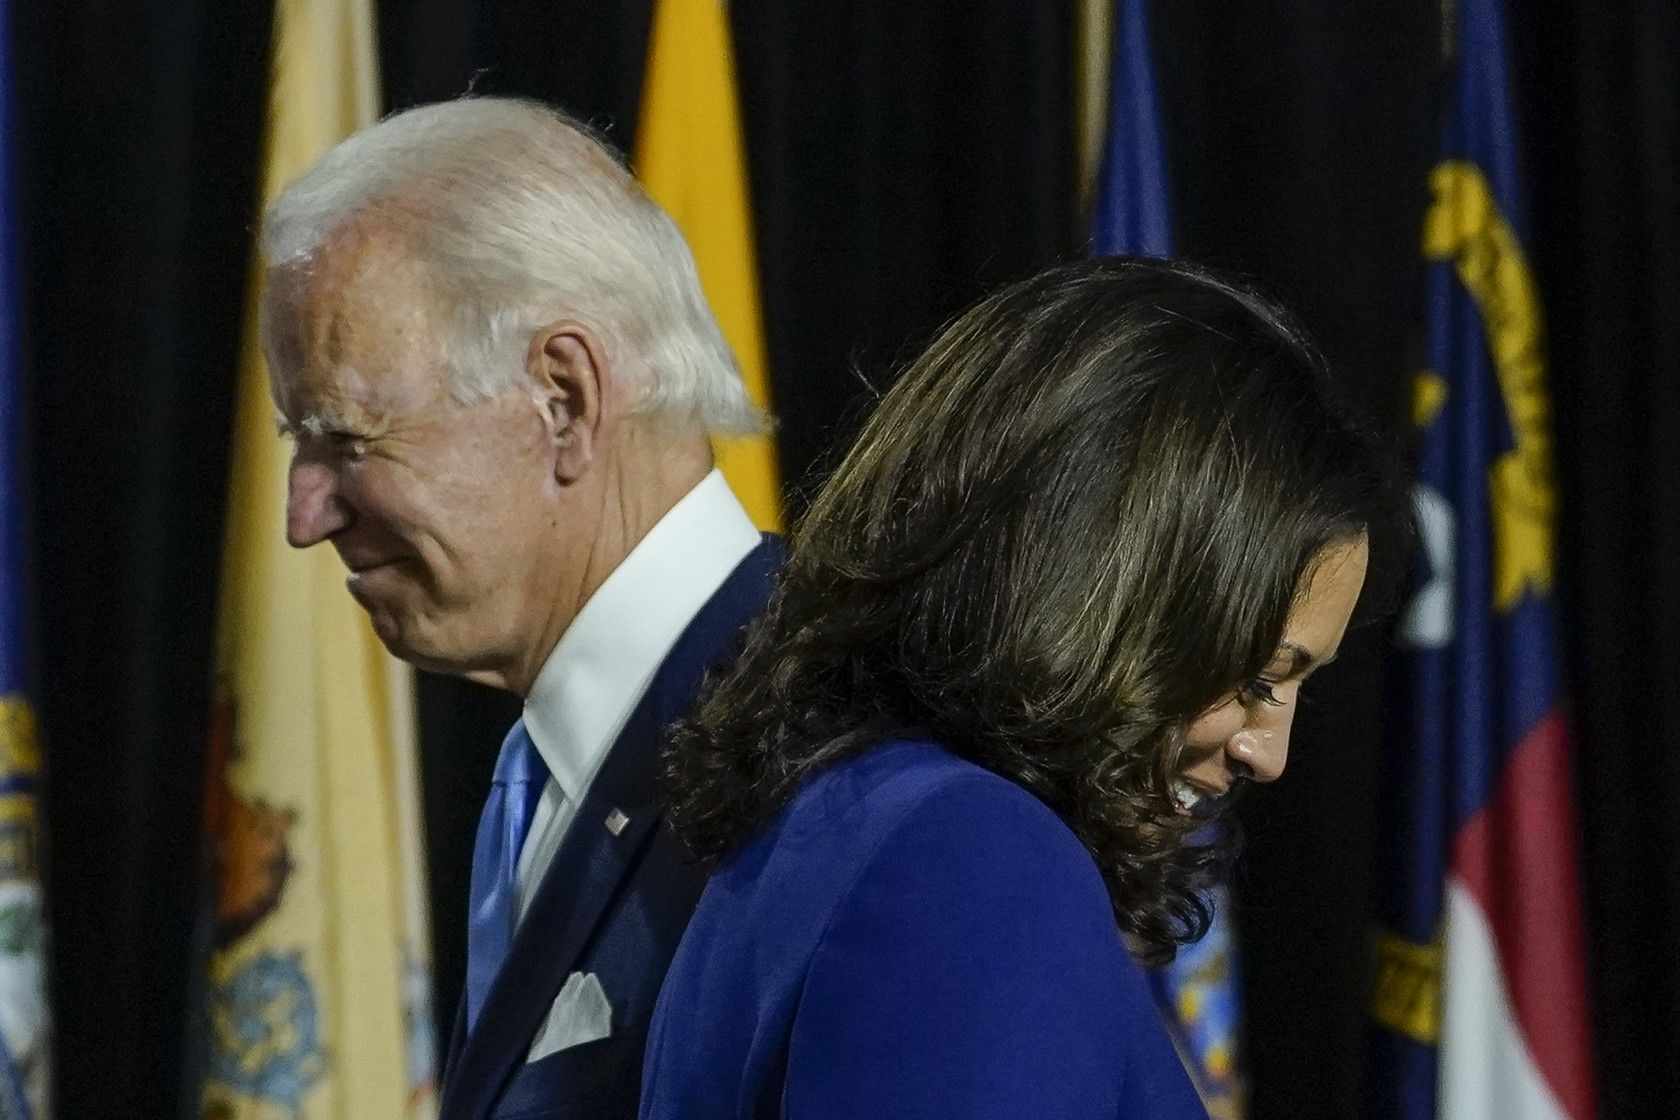 Joe Biden, Kamala Harris in first appearance as 2020 ticket Angeles Times